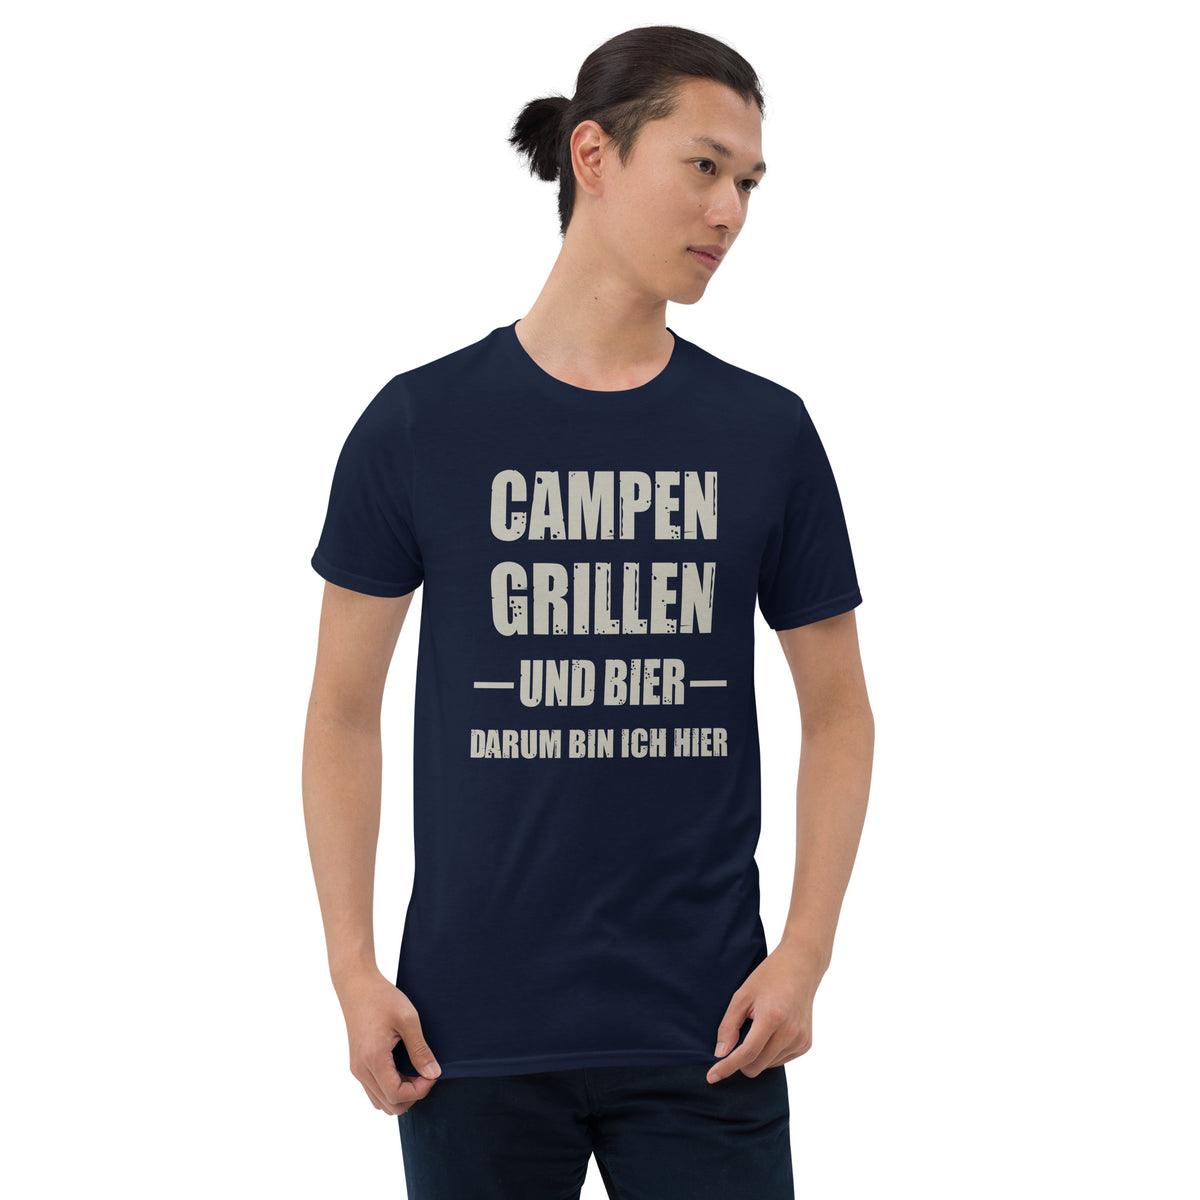 Cooles Herren Spruch Shirt "Campen Grillen und Bier"